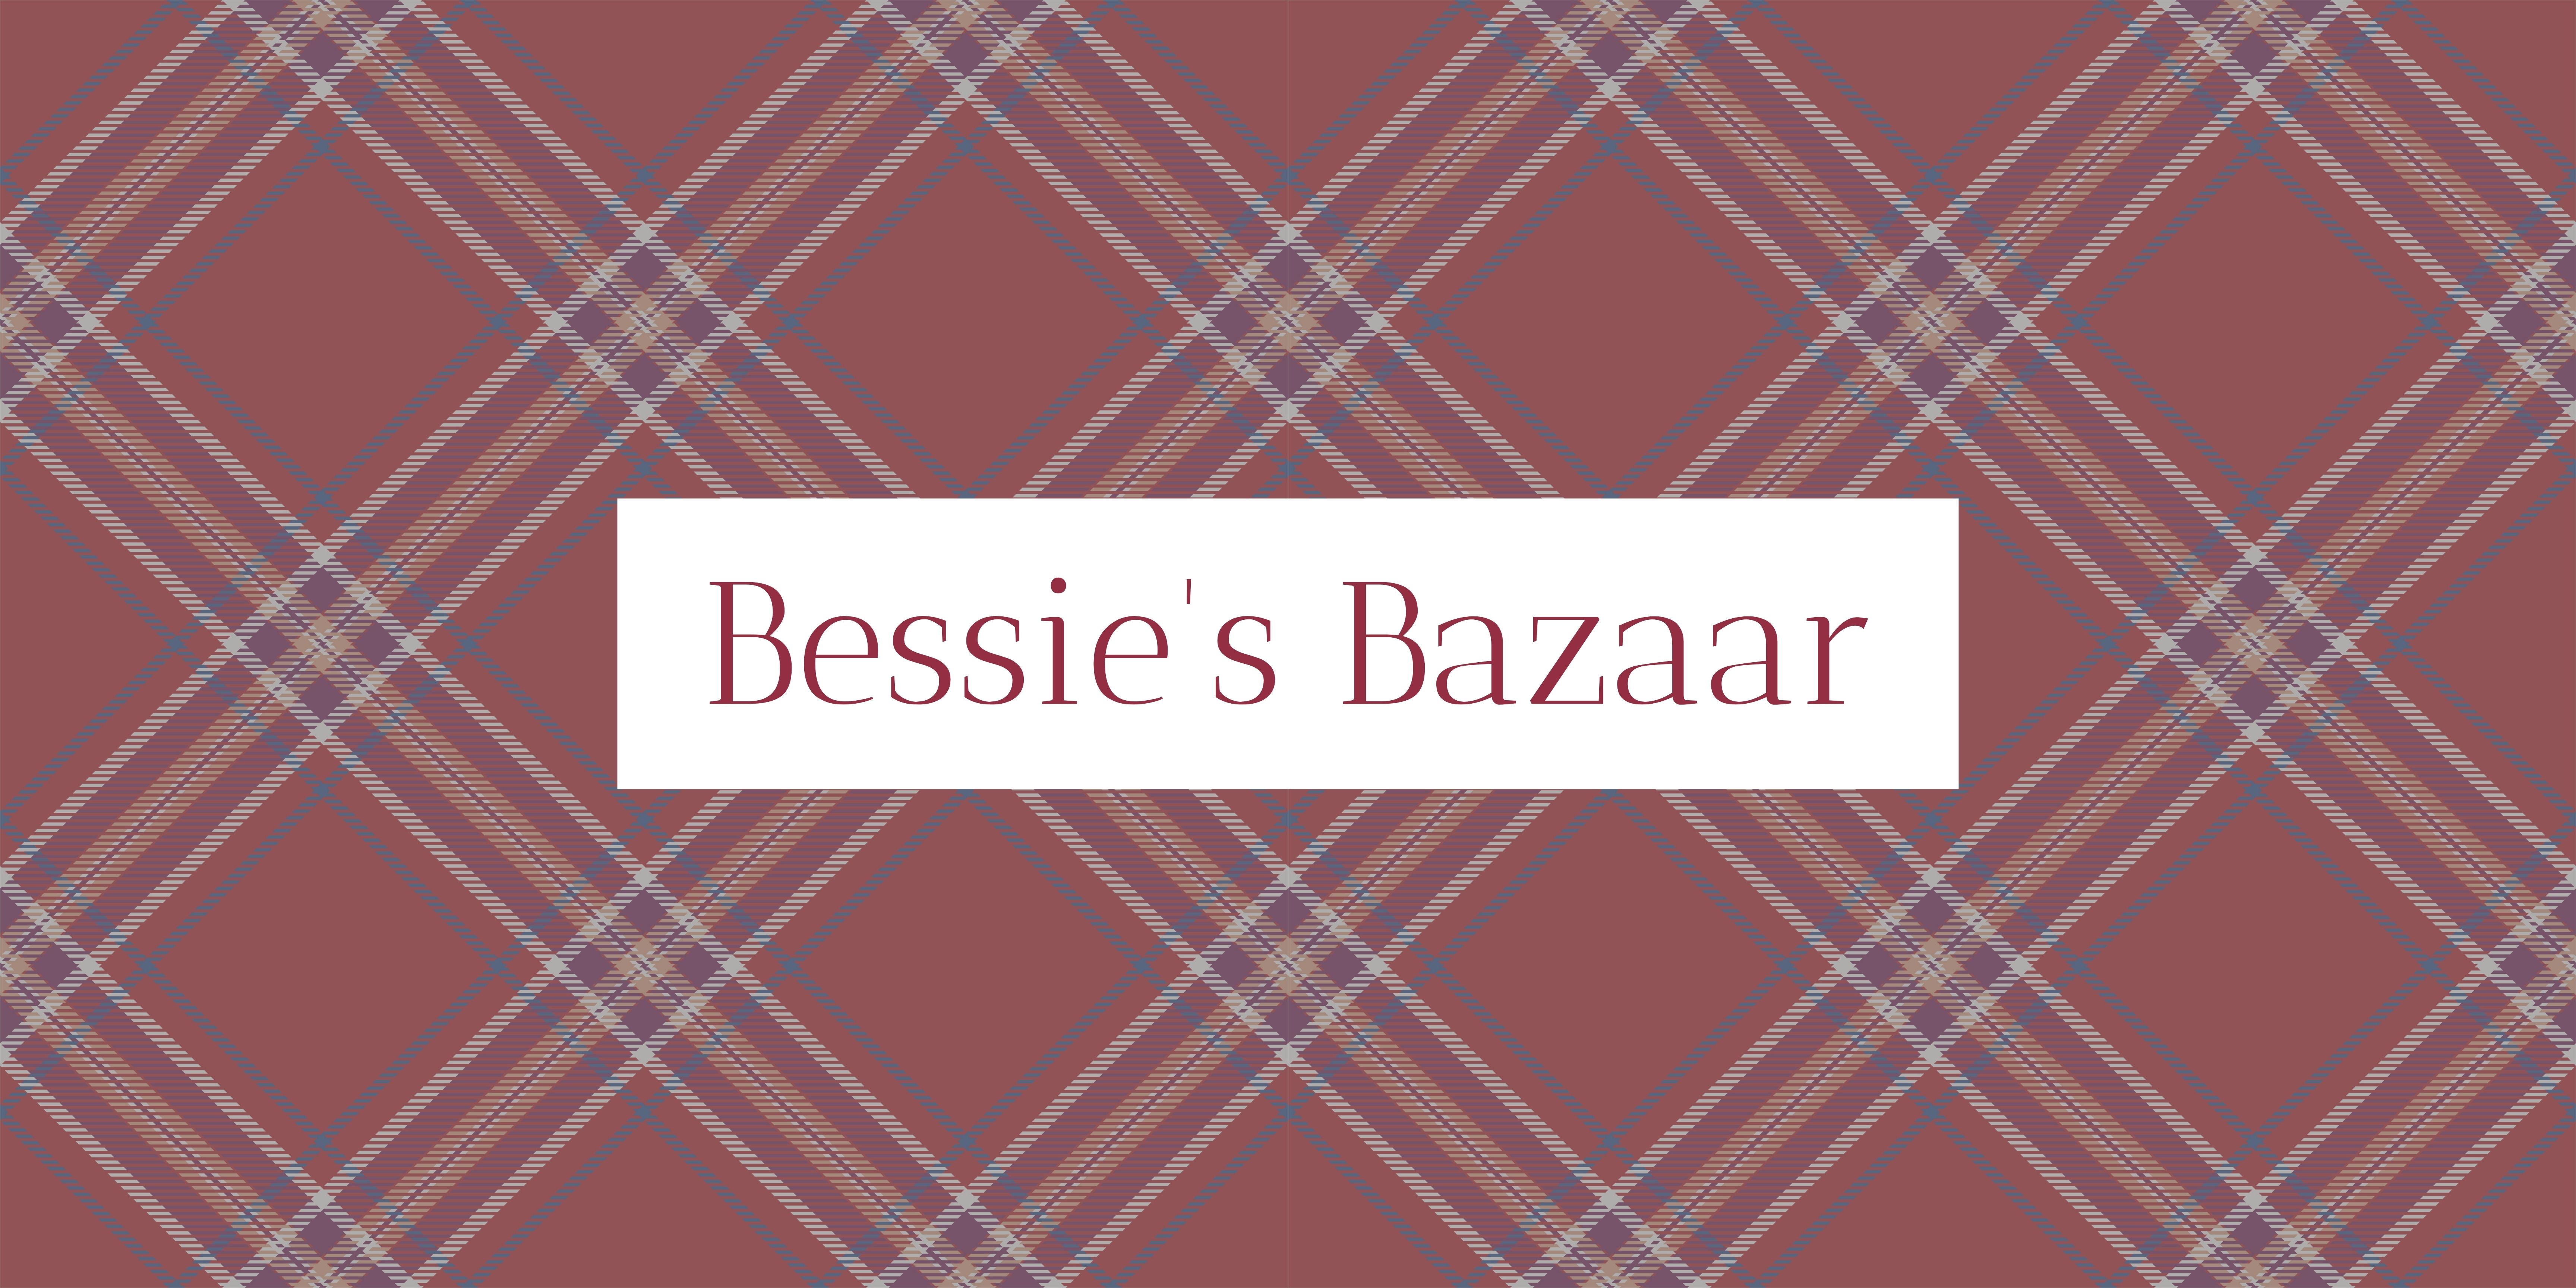 Bessie's Bazaar